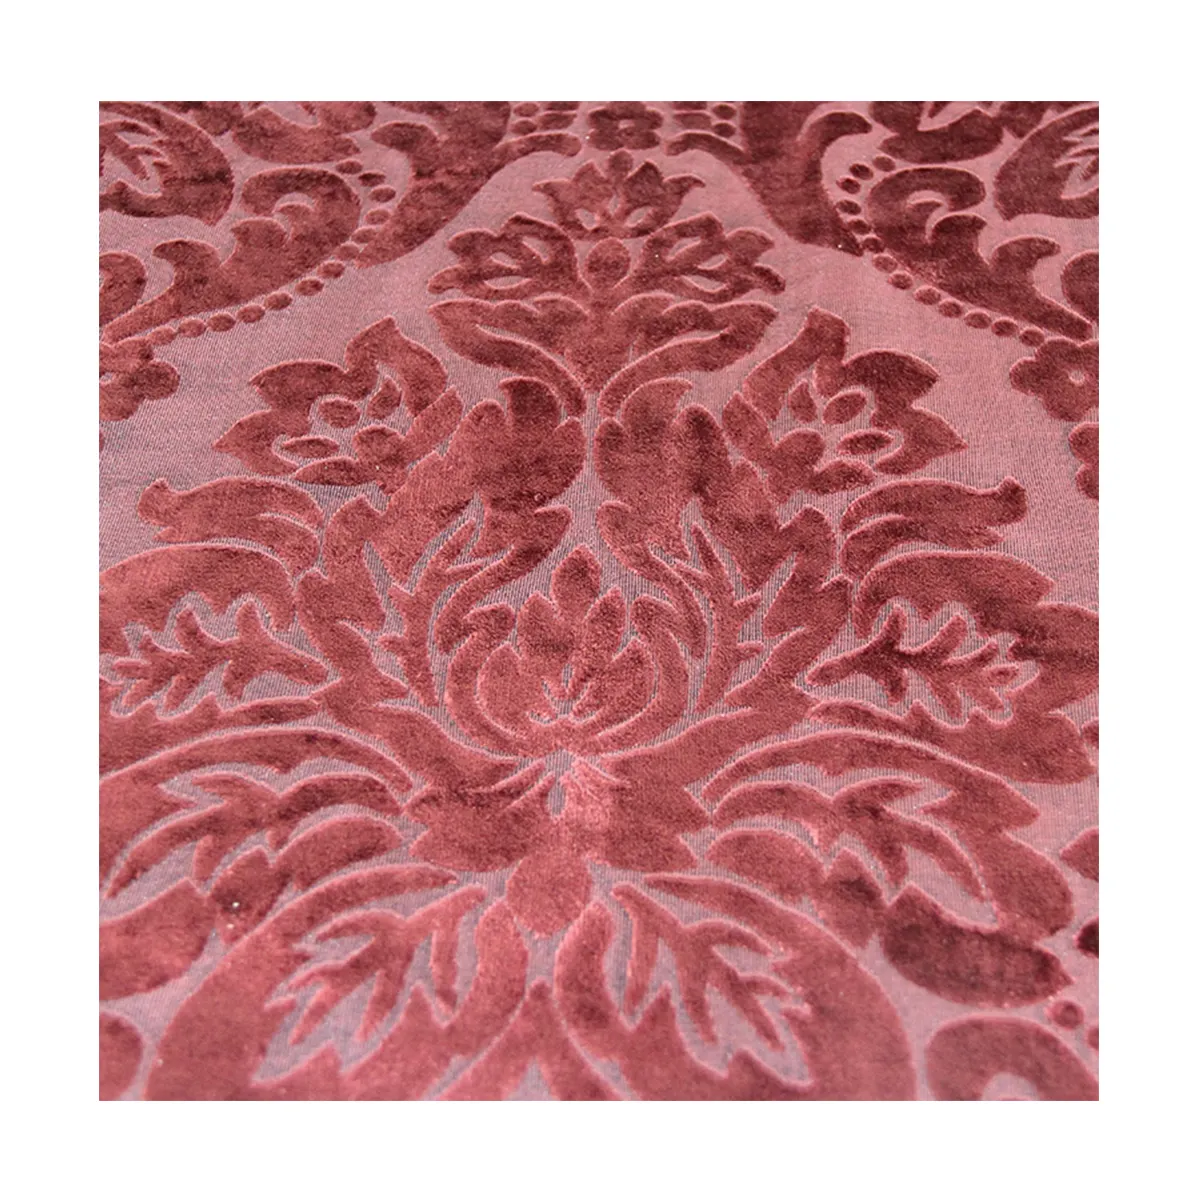 Jacquard damask velvet upholstery fabric for curtain